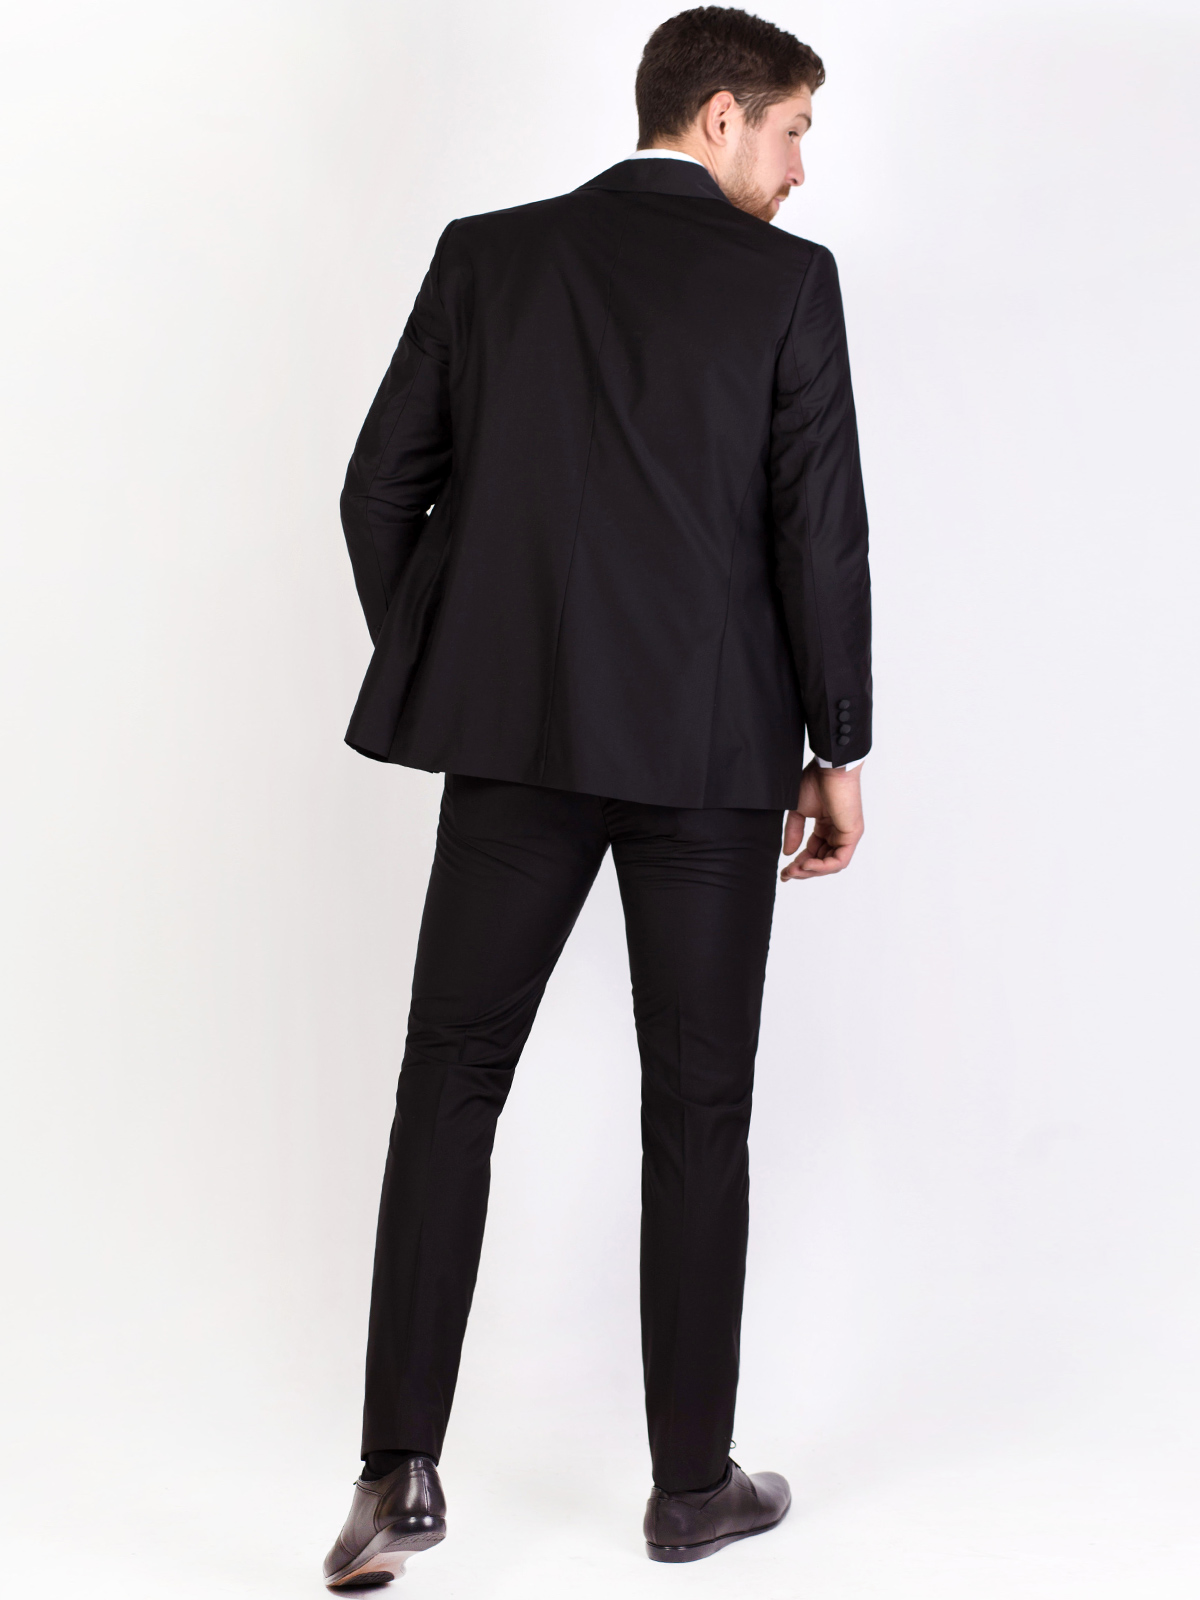  κομψό κλασικό παντελόνι σε μαύρο  - 63301 € 52.87 img4